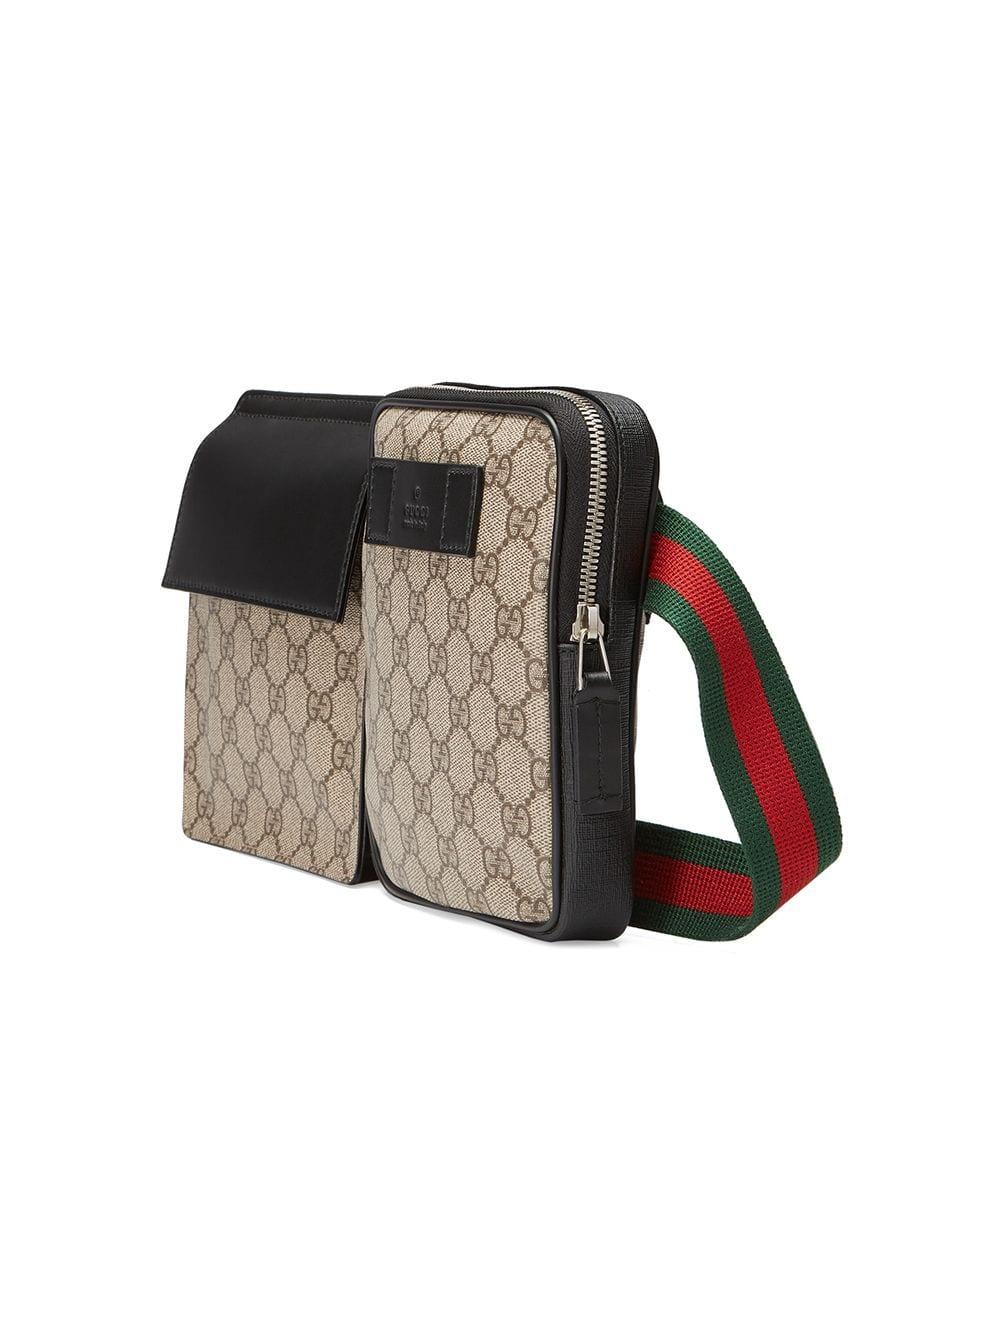 Gucci Canvas GG Supreme Belt Bag for Men - Lyst